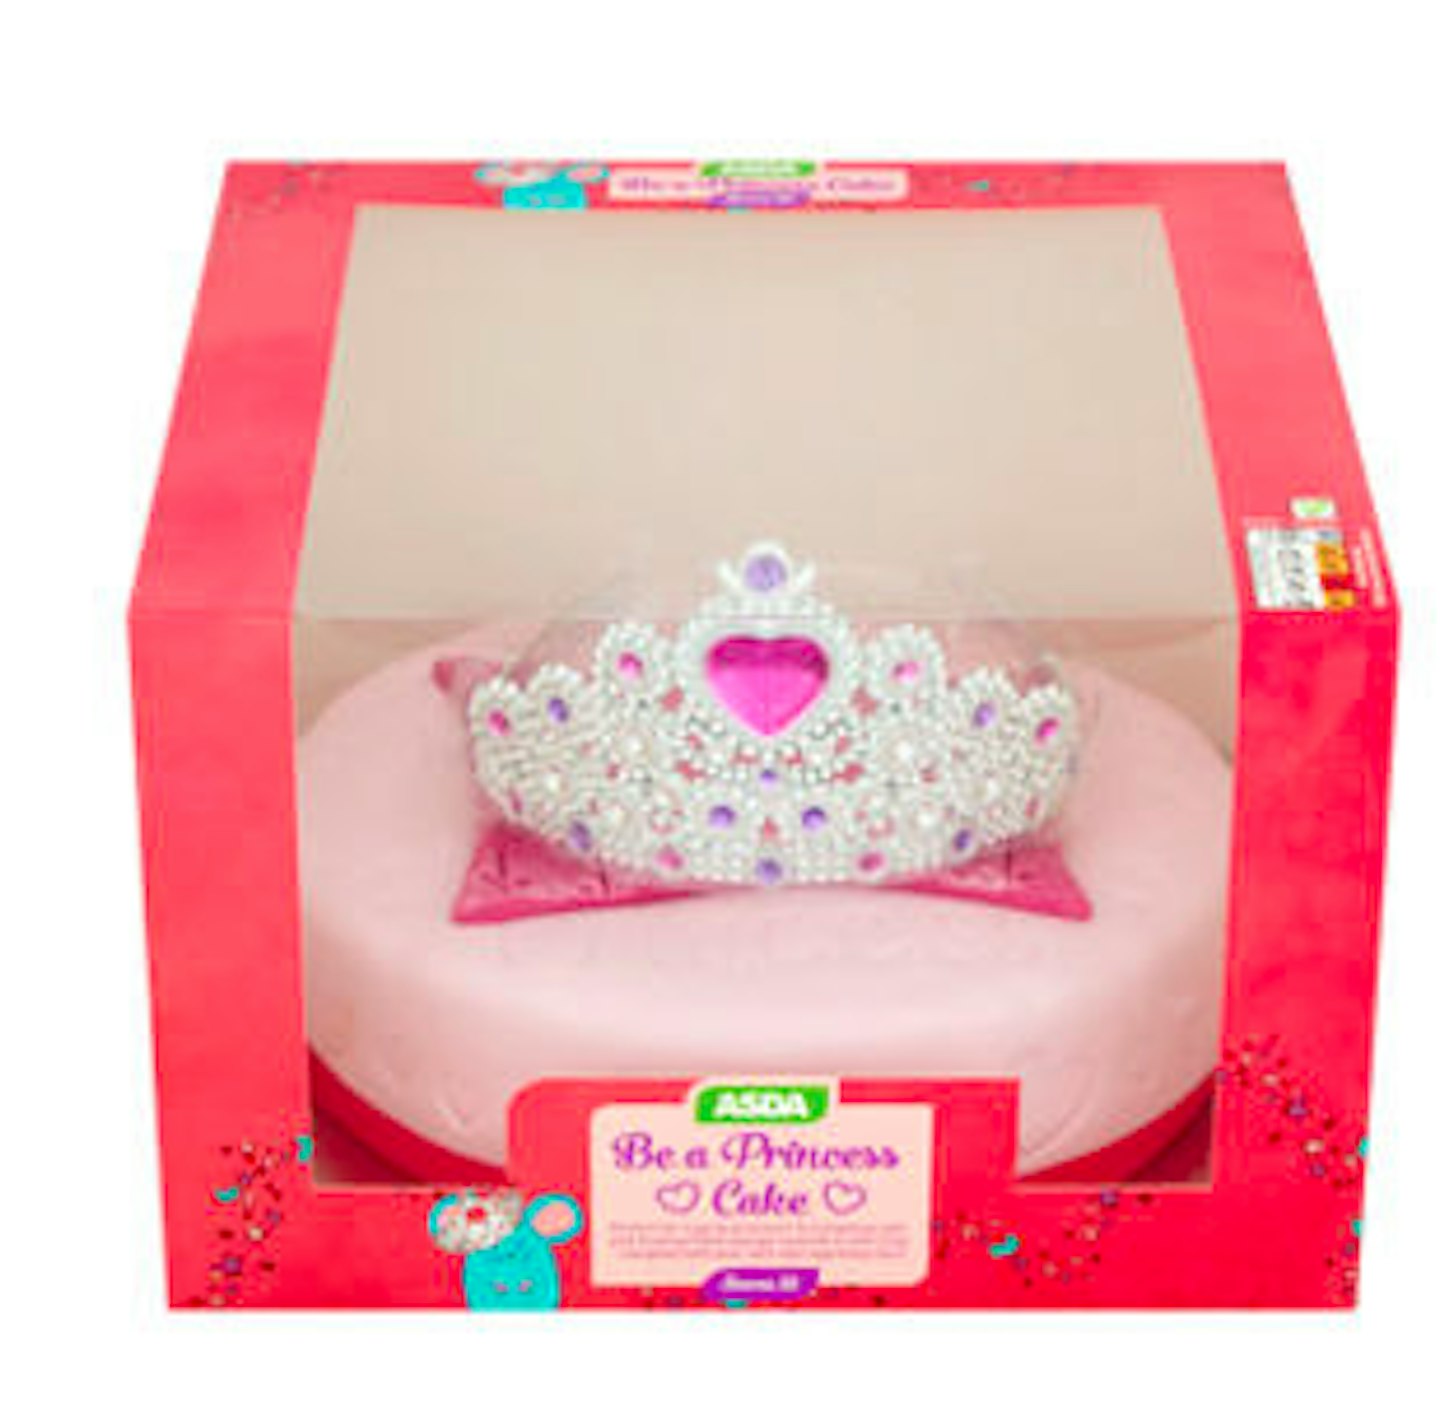 ASDA Be A Princess Celebration Cake